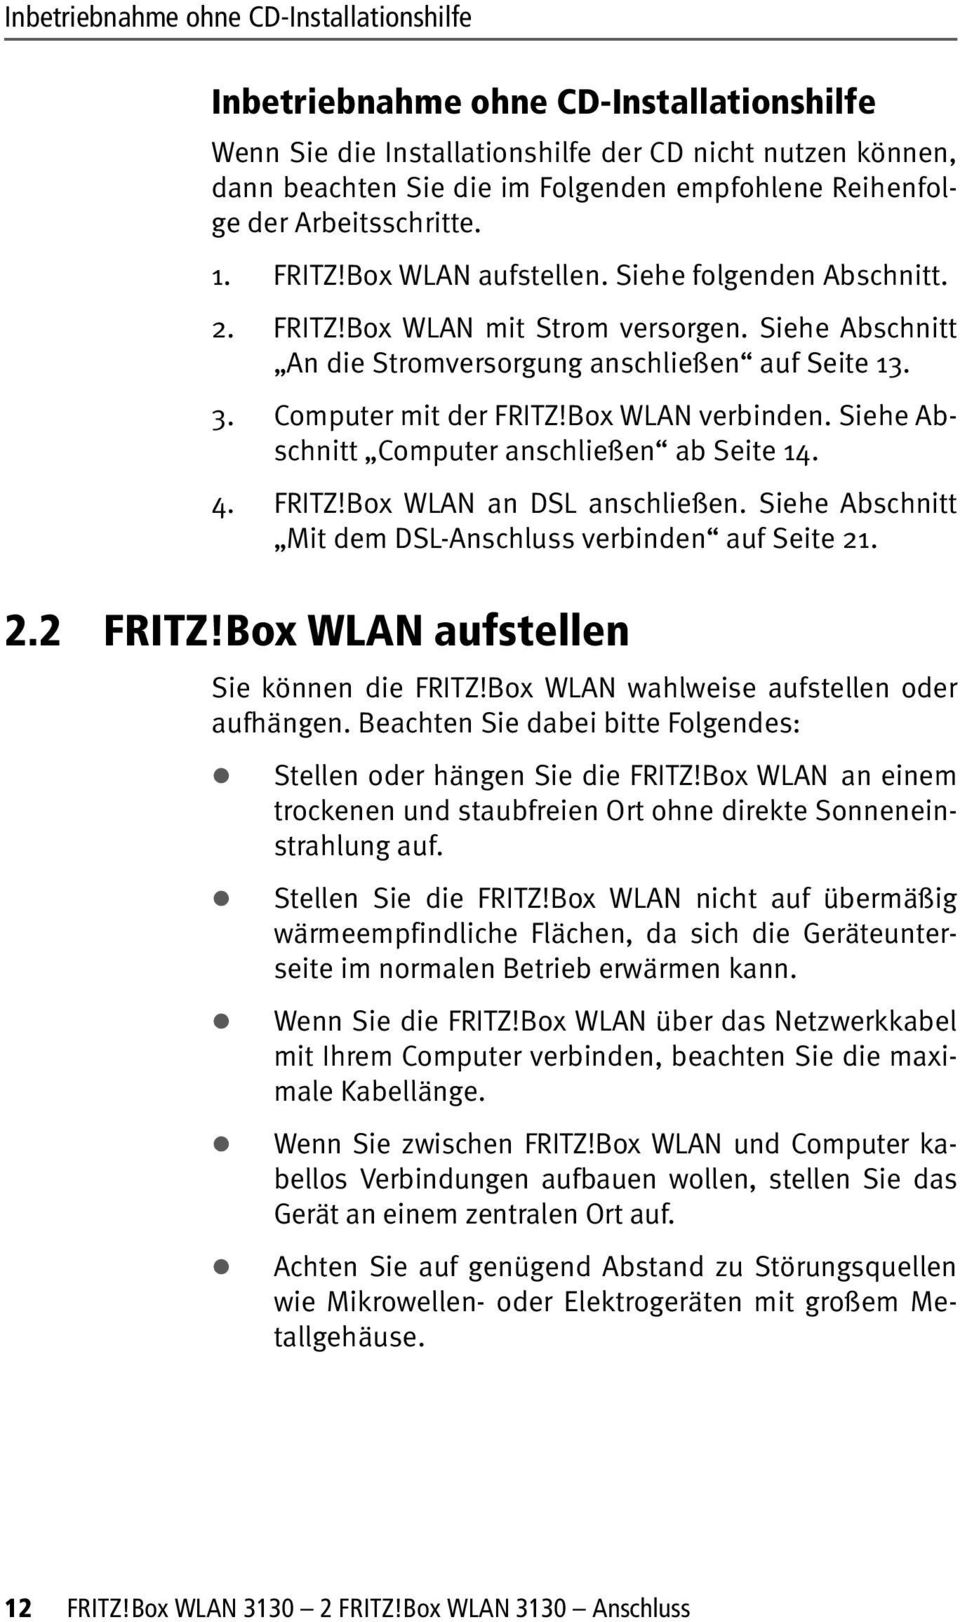 Computer mit der FRITZ!Box WLAN verbinden. Siehe Abschnitt Computer anschließen ab Seite 14. 4. FRITZ!Box WLAN an DSL anschließen. Siehe Abschnitt Mit dem DSL-Anschluss verbinden auf Seite 21. 2.2 FRITZ!